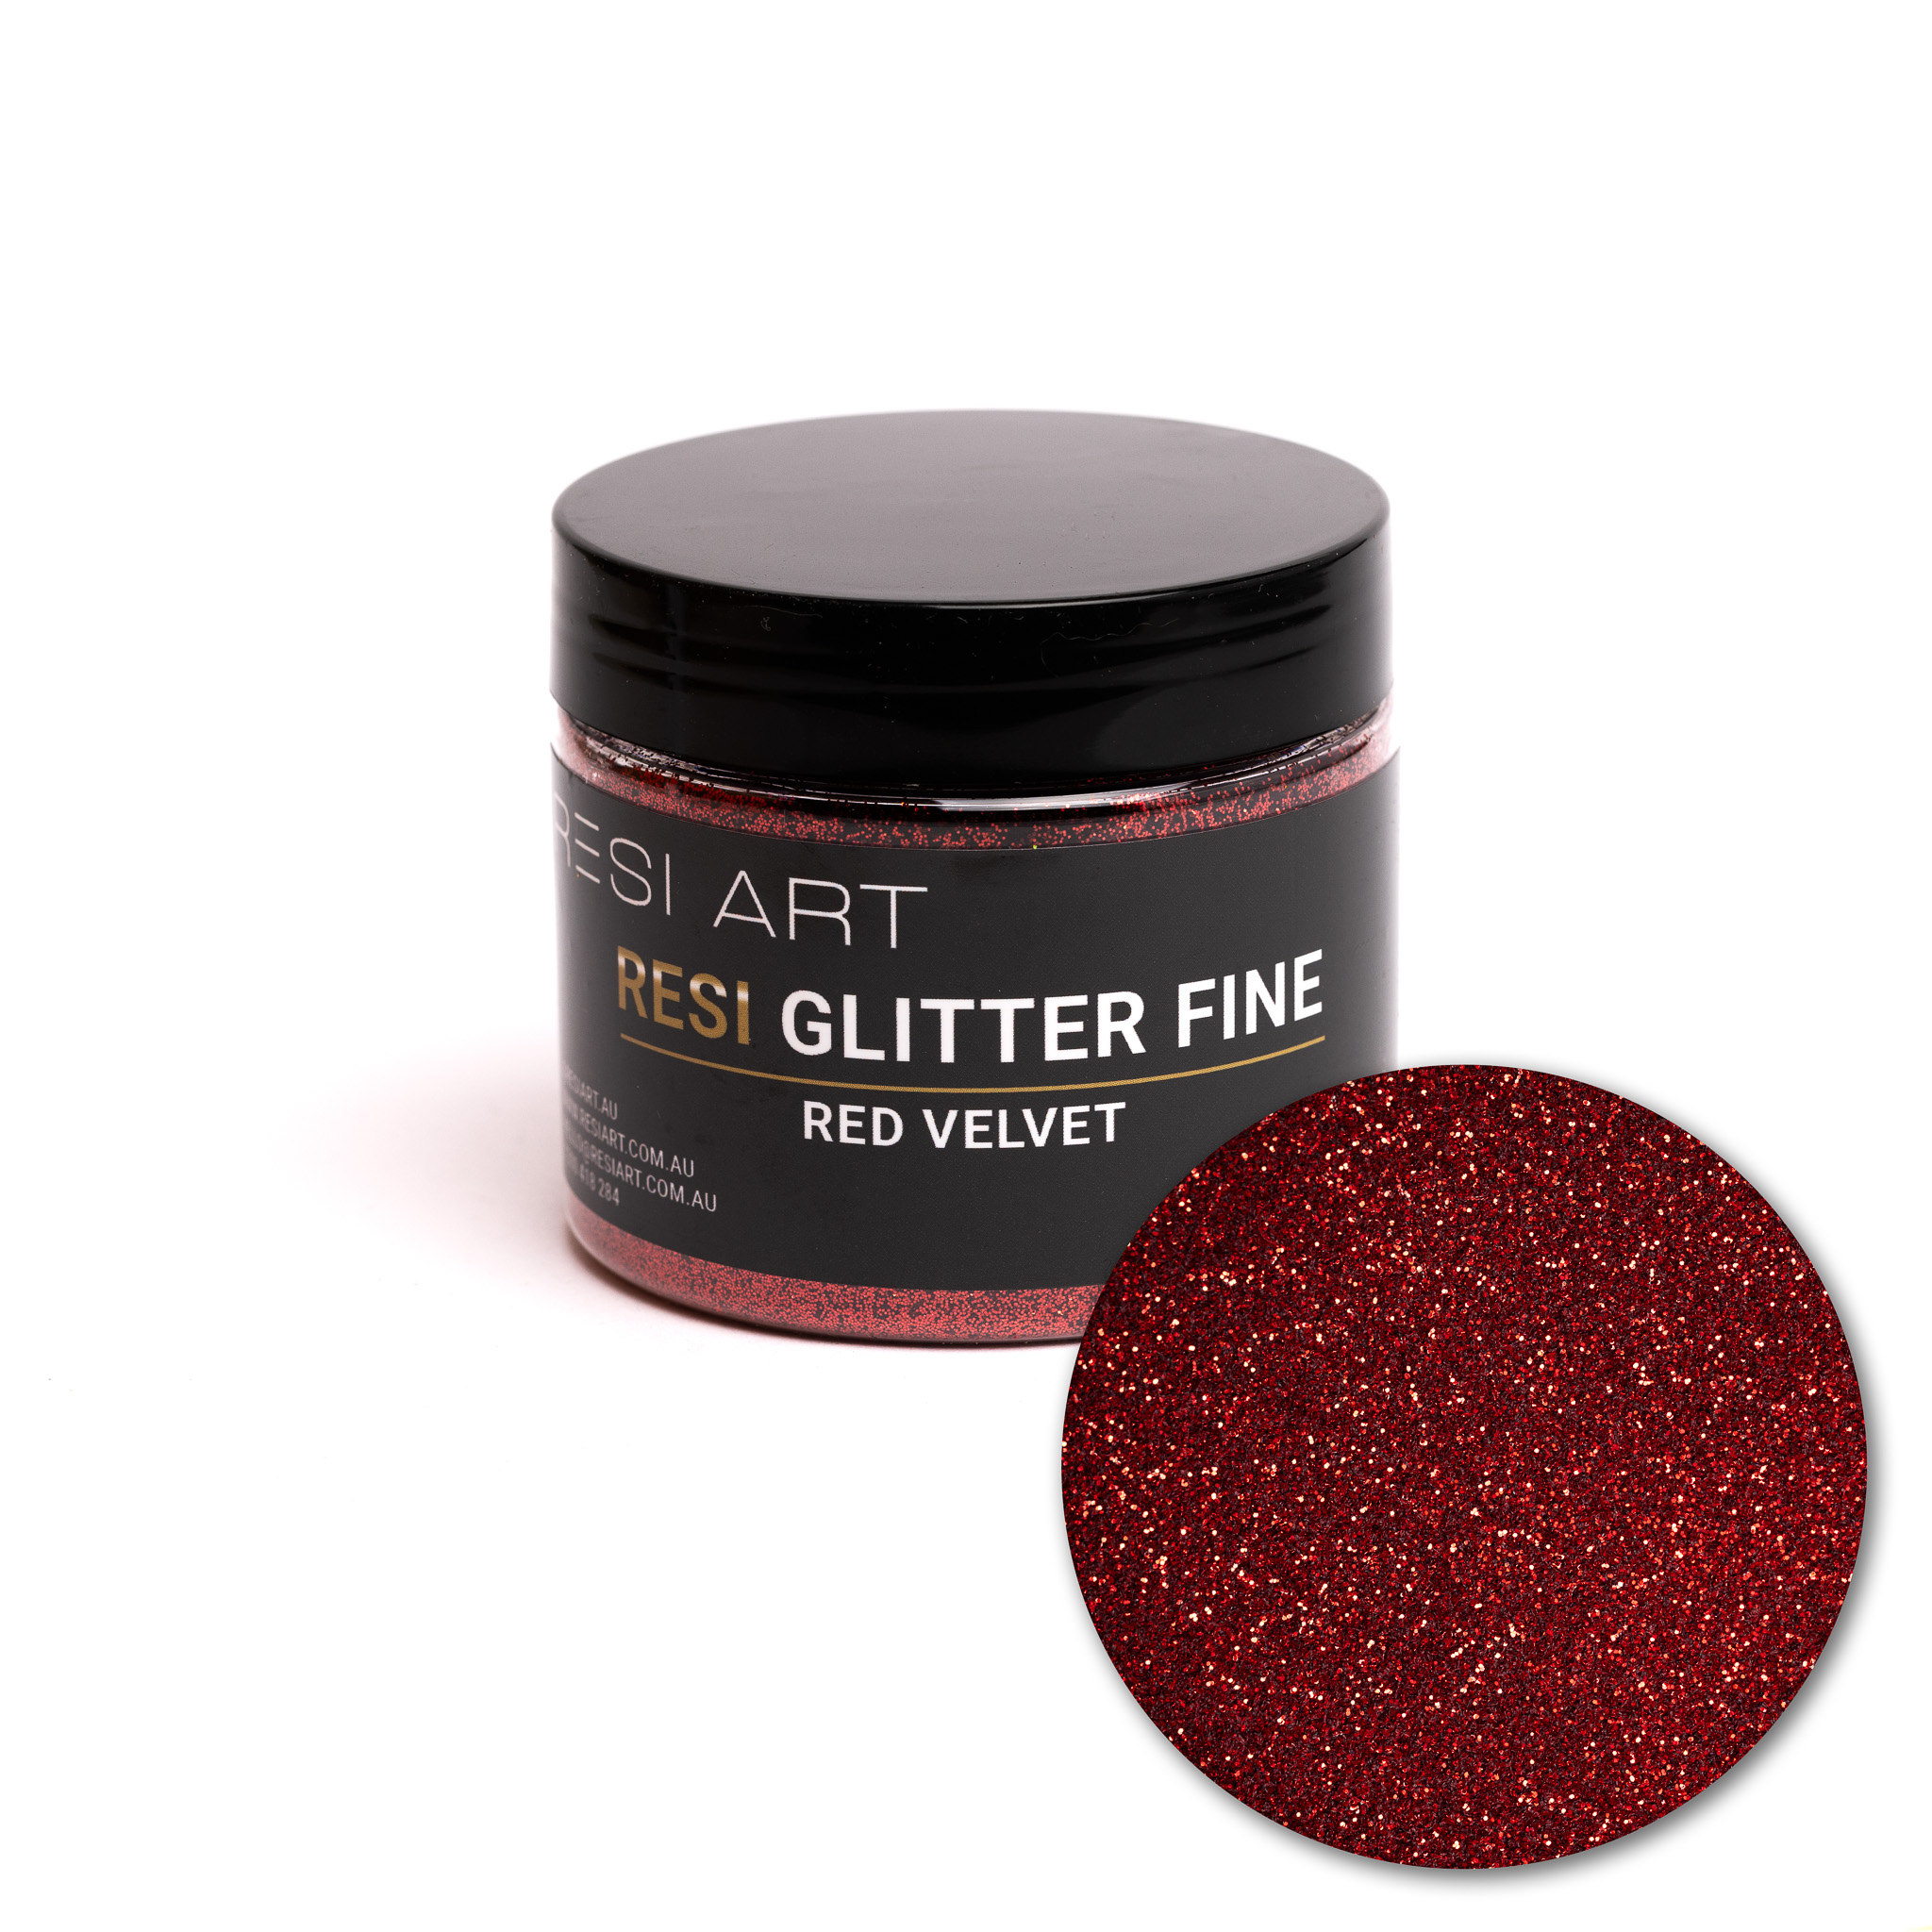 Red Velvet 100g - Resi Glitter Fine